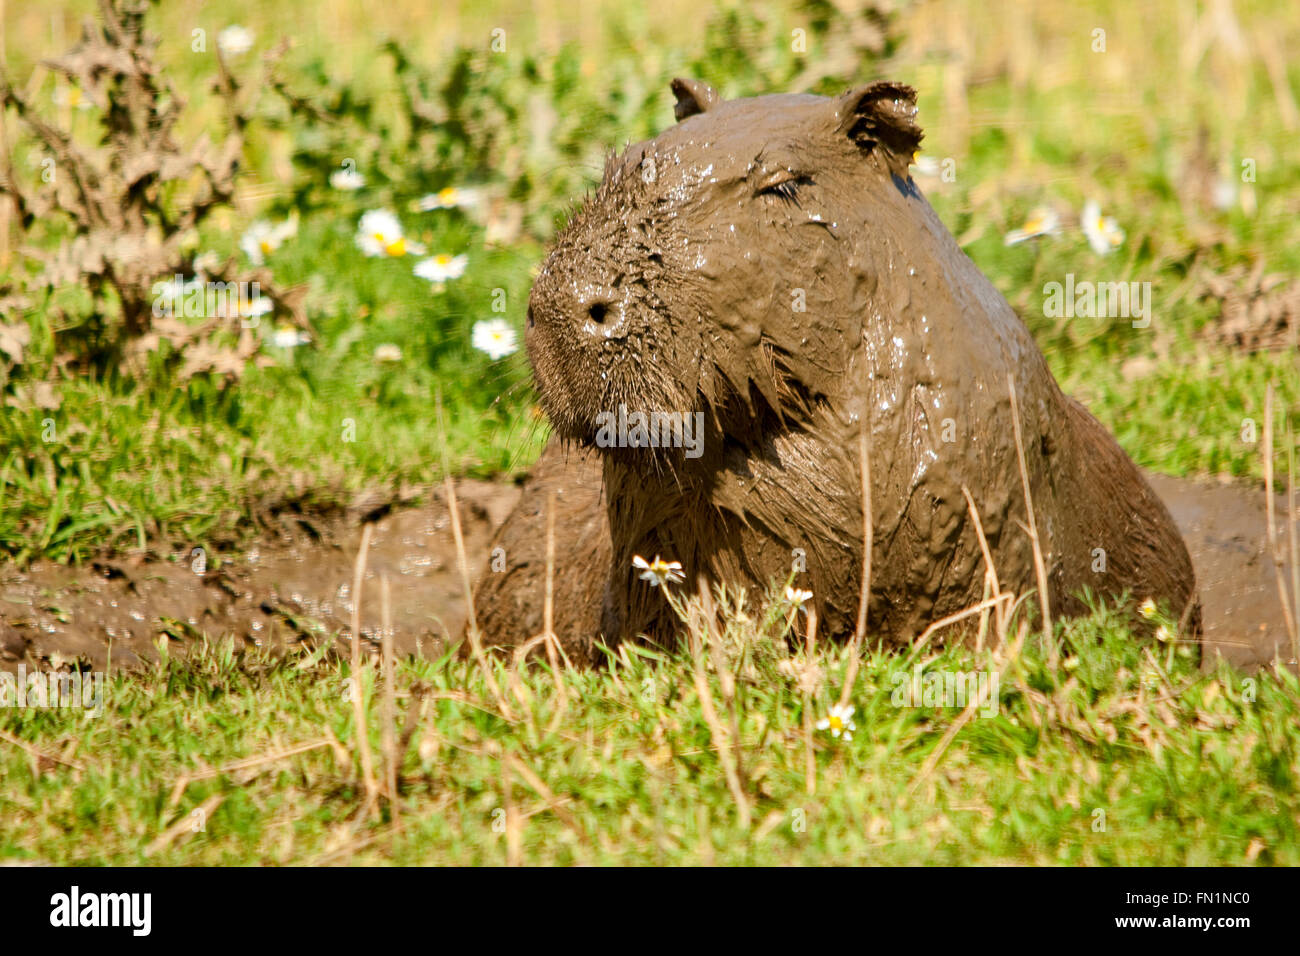 Capybara ou hydrochoerus hydrochaeris entièrement recouvert de boue après avoir été enveloppé dans une épaisse boue ressemblant à un revêtement de chocolat. Des fouets qui dépassent de la boue. Banque D'Images